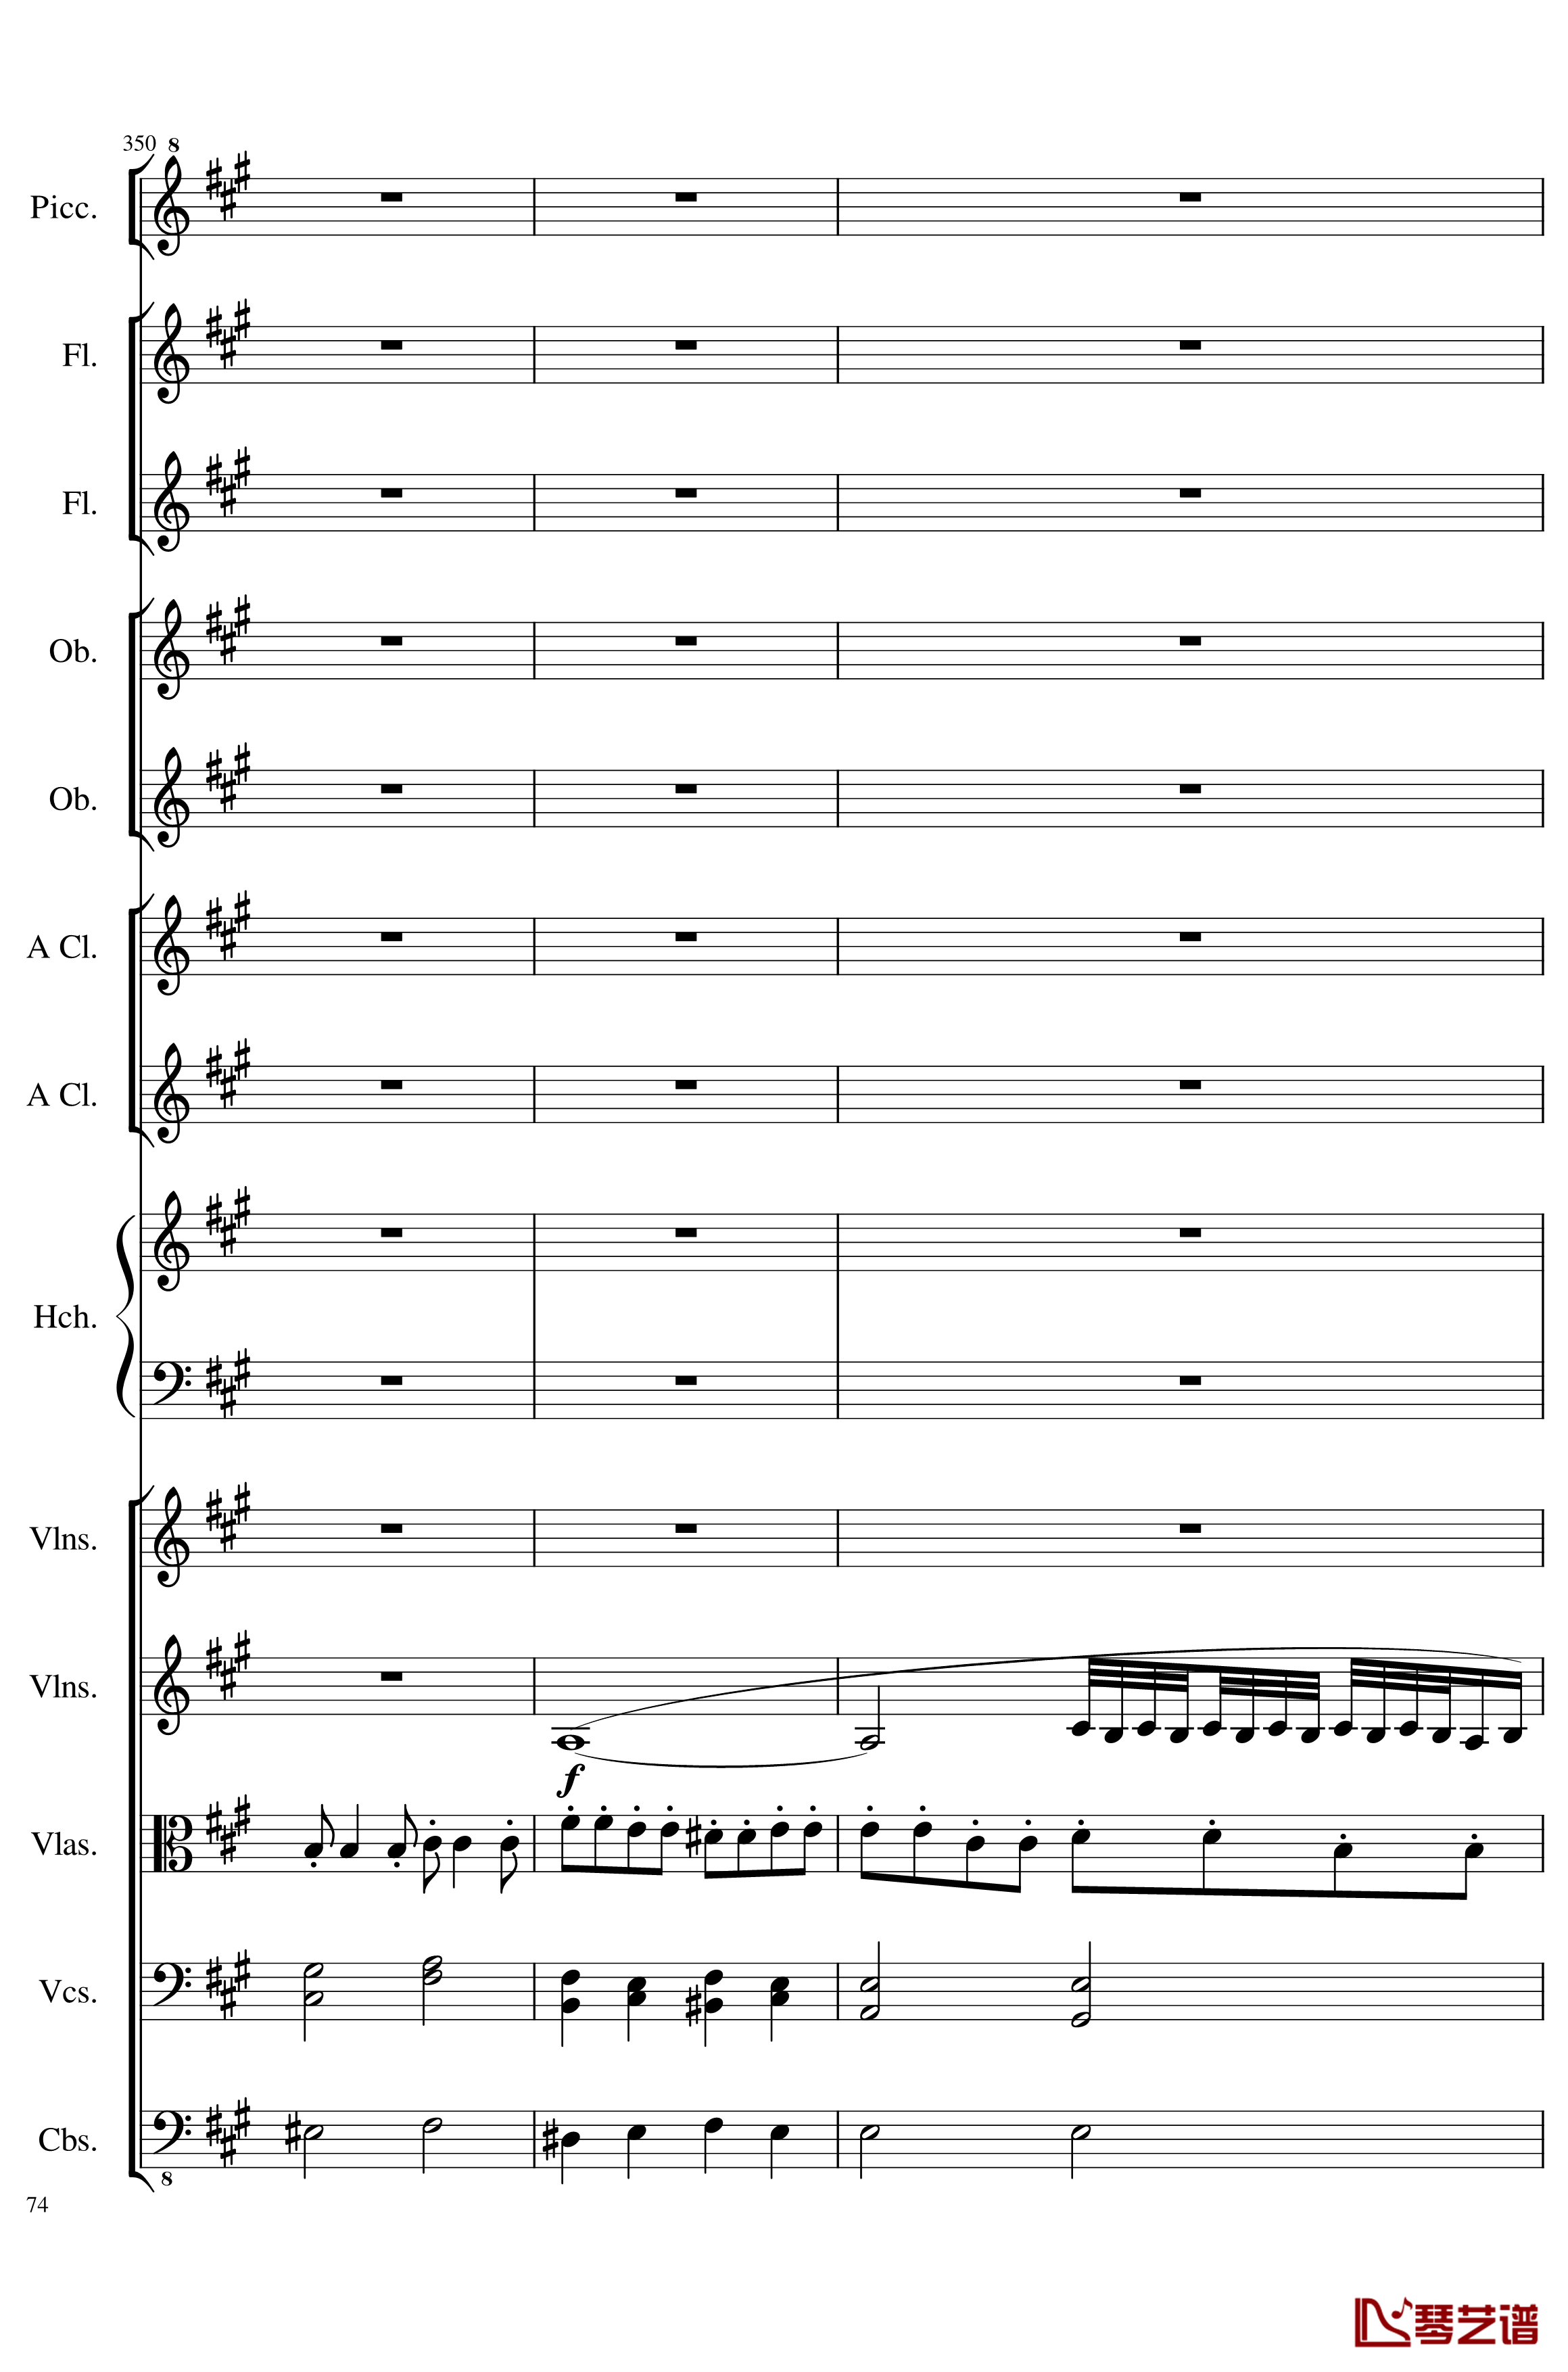 7 Contredanses No.1-7, Op.124钢琴谱-7首乡村舞曲，第一至第七，作品124-一个球